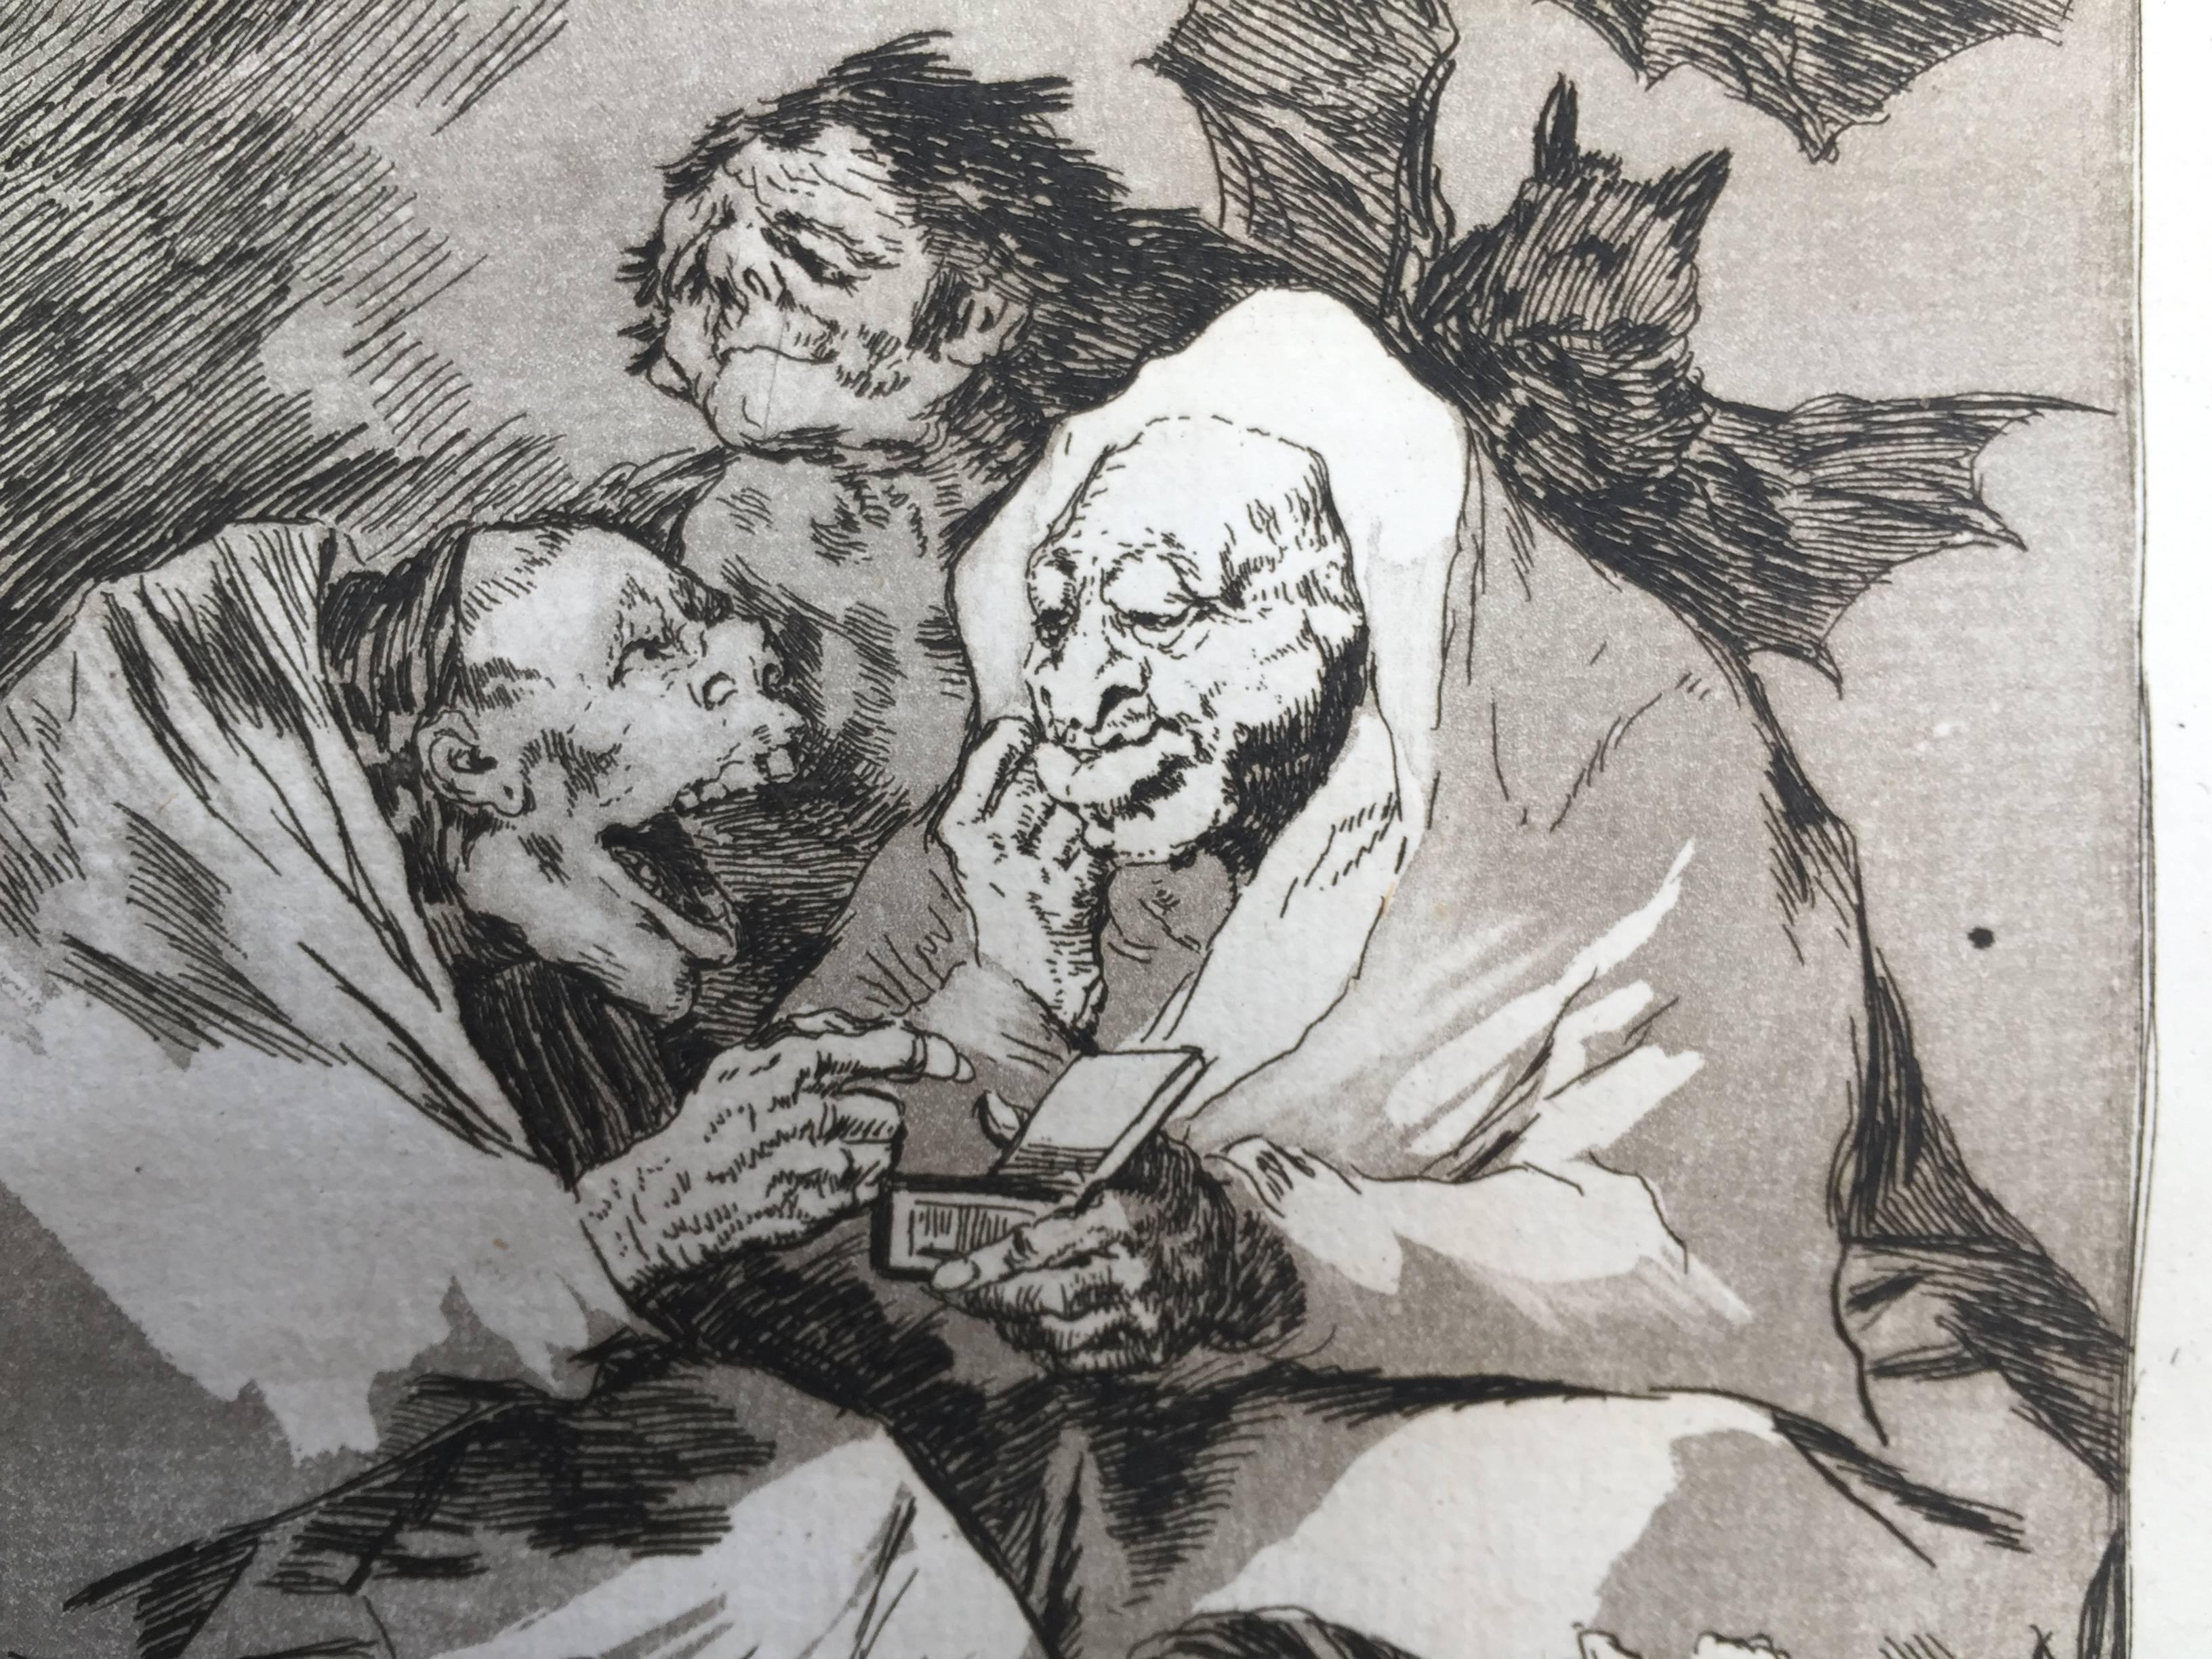 MUCHO HAY QUE CHUPAR - Print by Francisco Goya